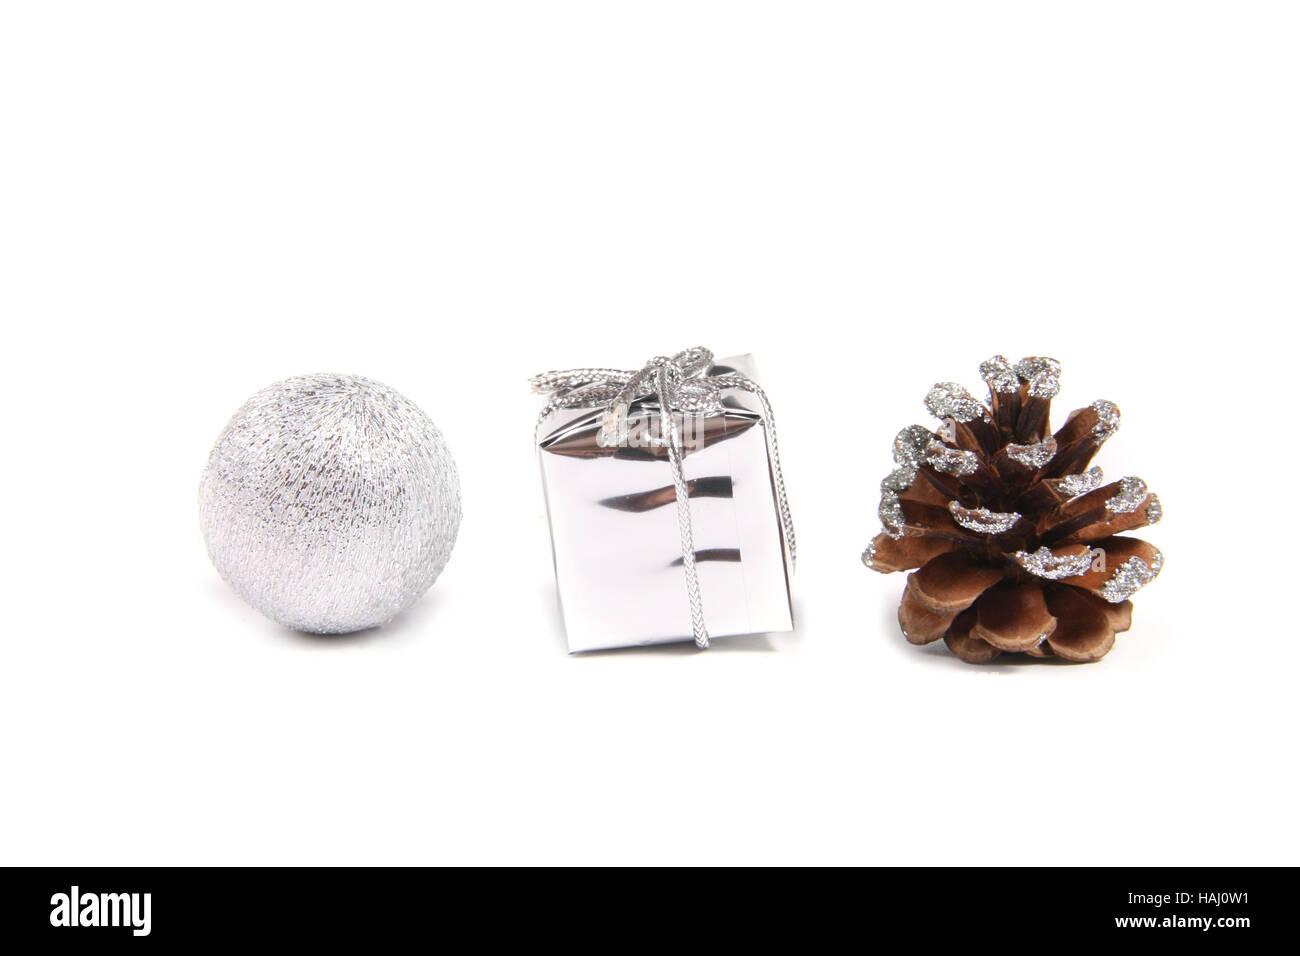 Trois objets de décoration pour Noël - ball, don et pomme Banque D'Images